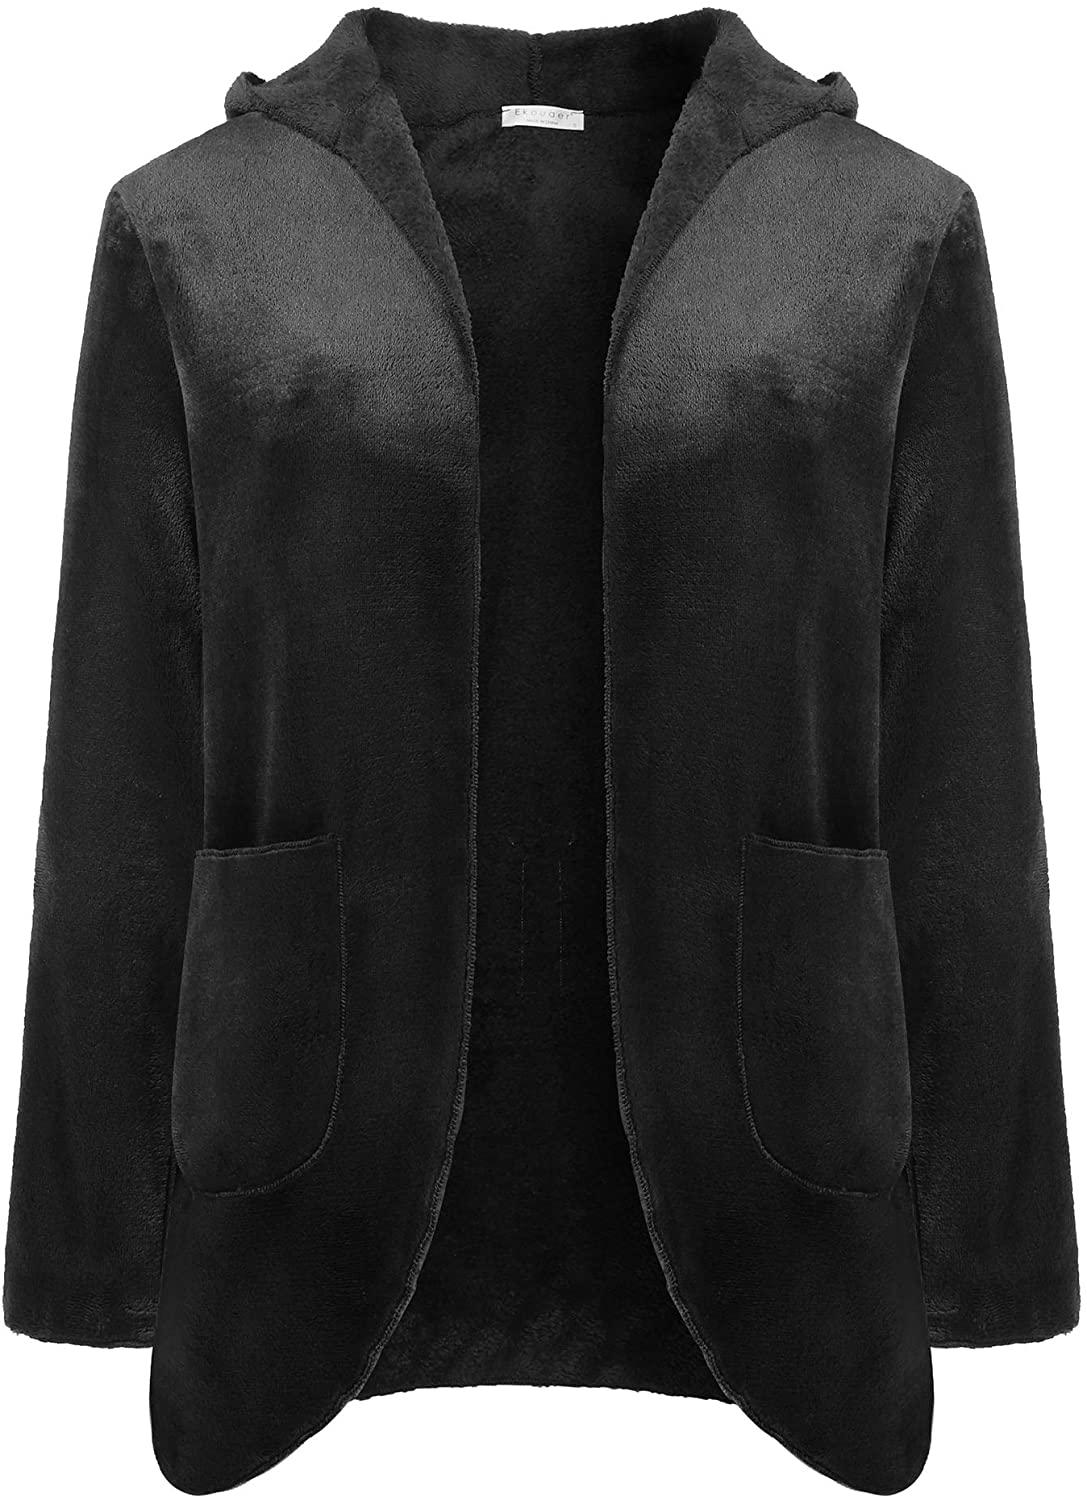 Price:$17.99 Ekouaer Flannel Sleepwear for Women Bed Jacket Warm Winter Coat Hooded Oversized Jacket Outwear Lounge Nightgown Housecoat Black at Amazon Women’s Clothing store